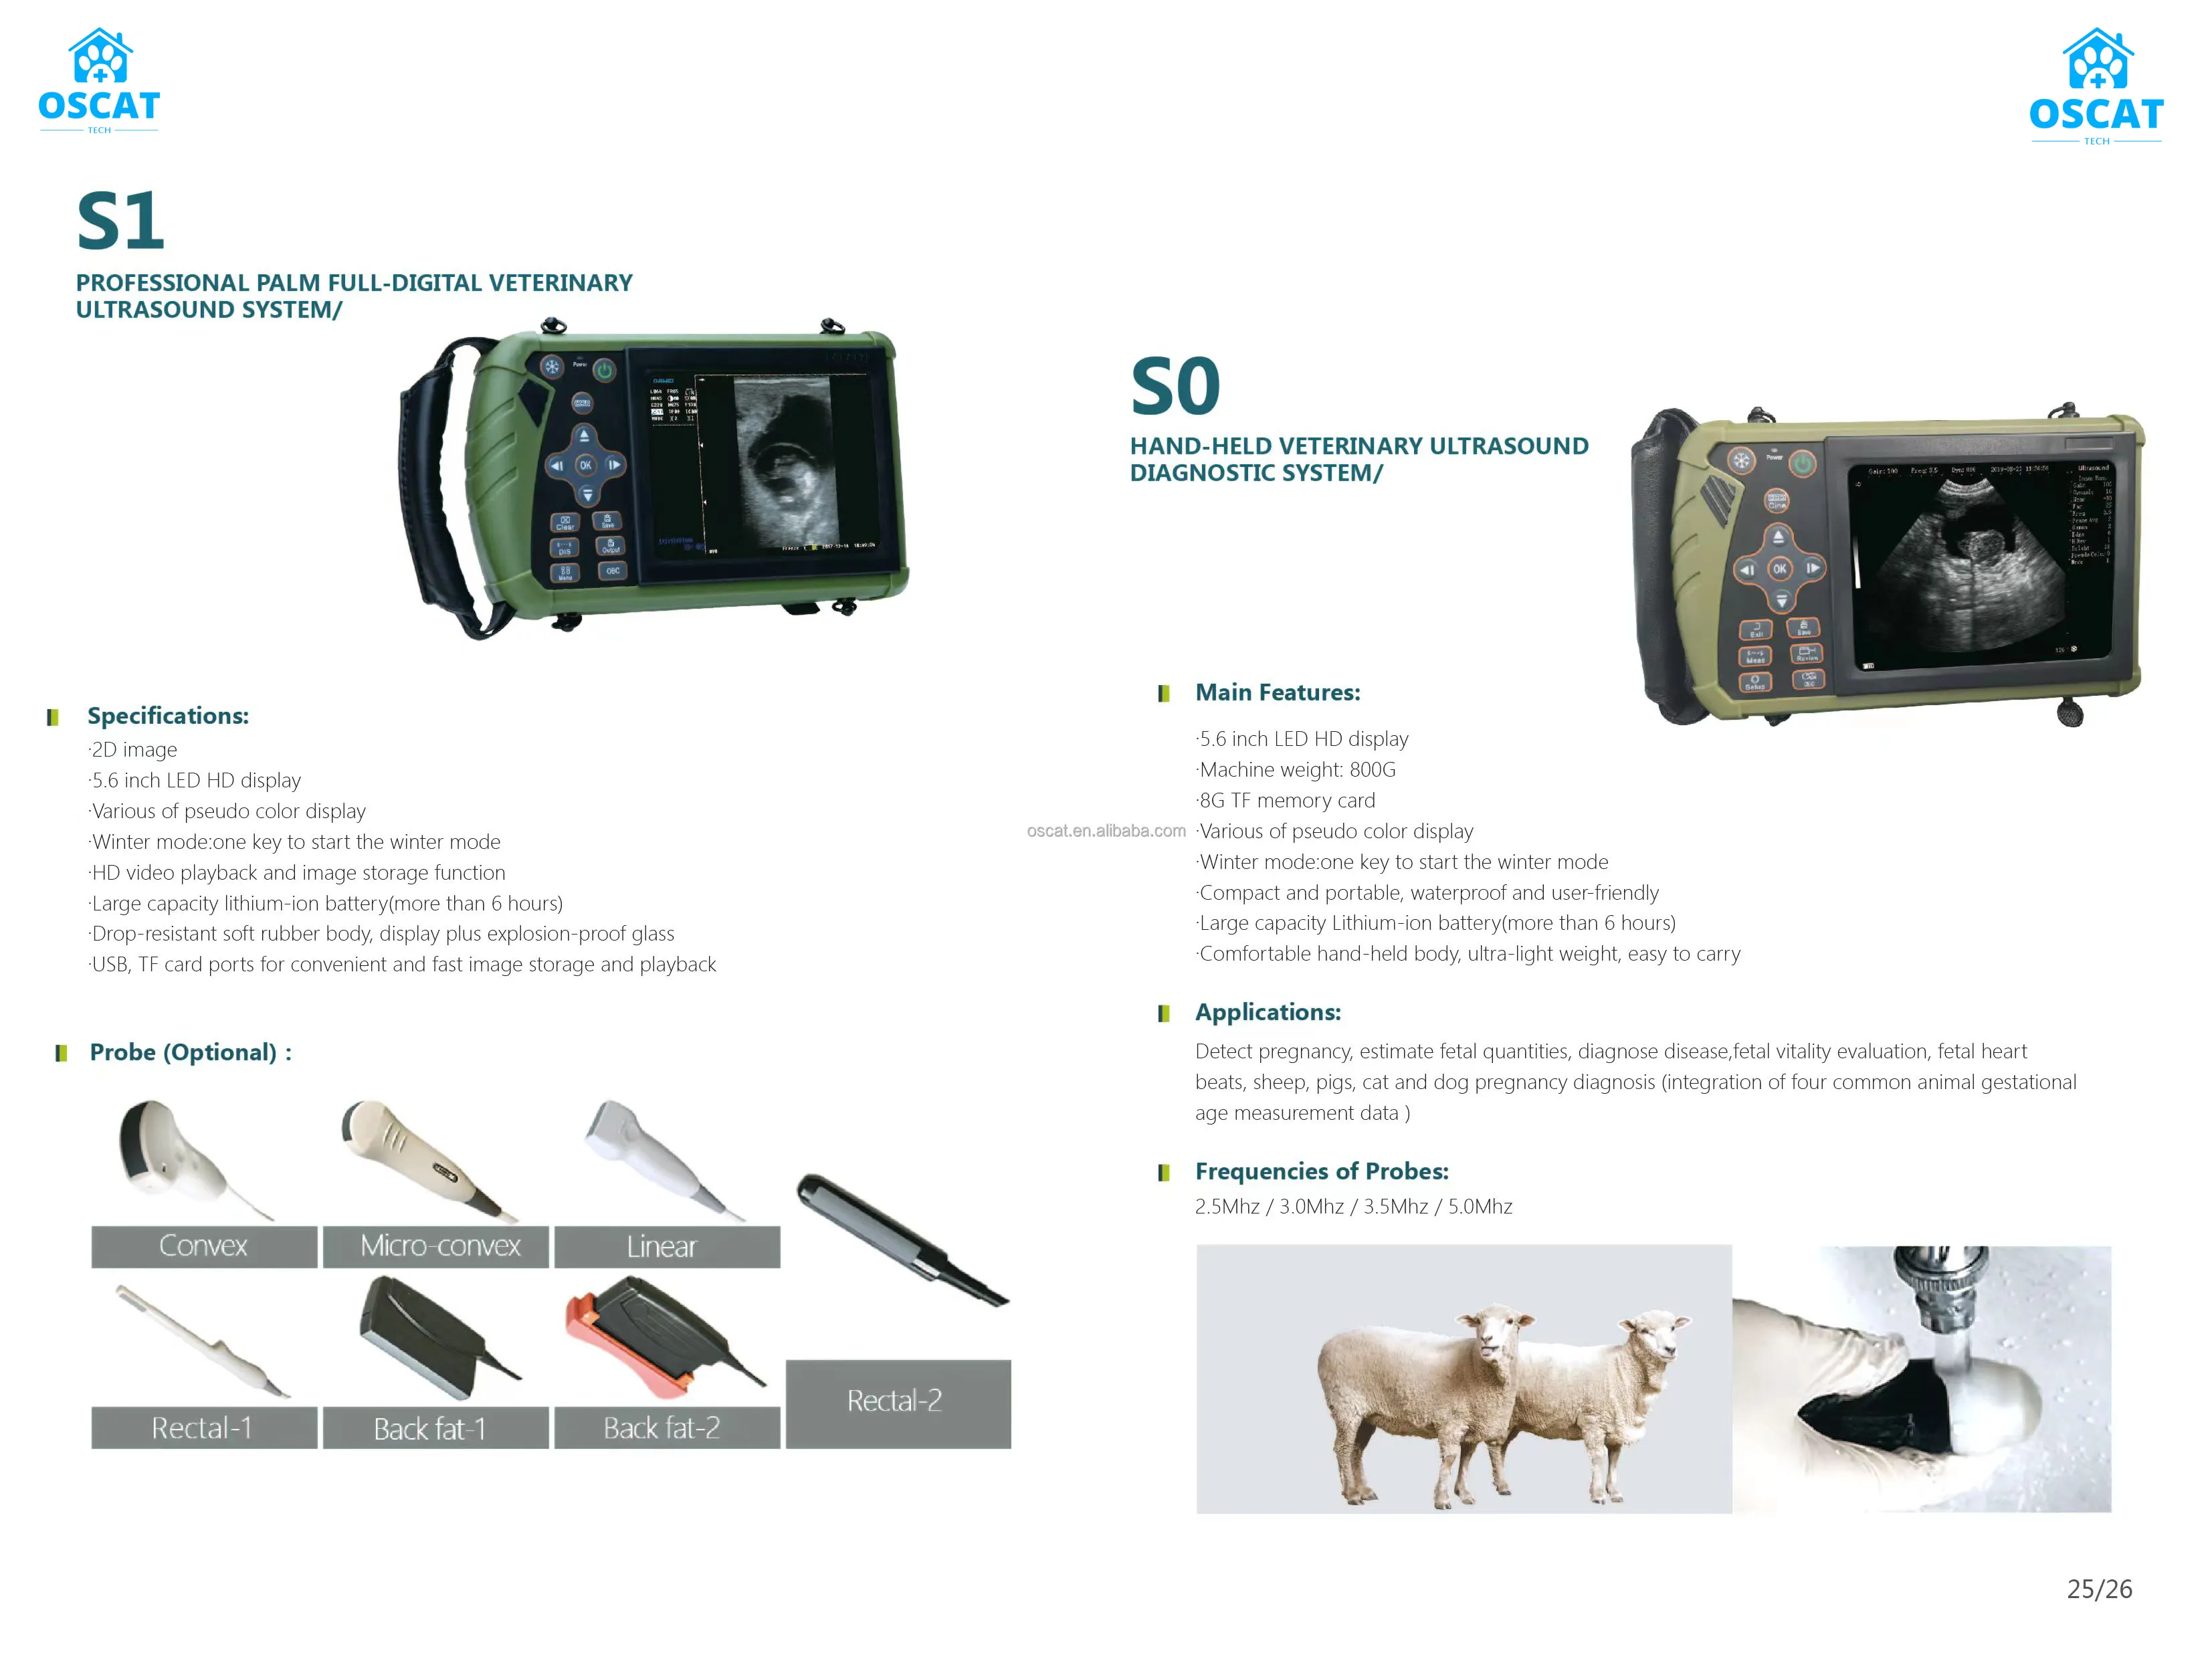 מכונת אולטרסאונד ציוד וטריני OSCAT ניידת לשימוש בחווה במרפאת חיות וטרינרית